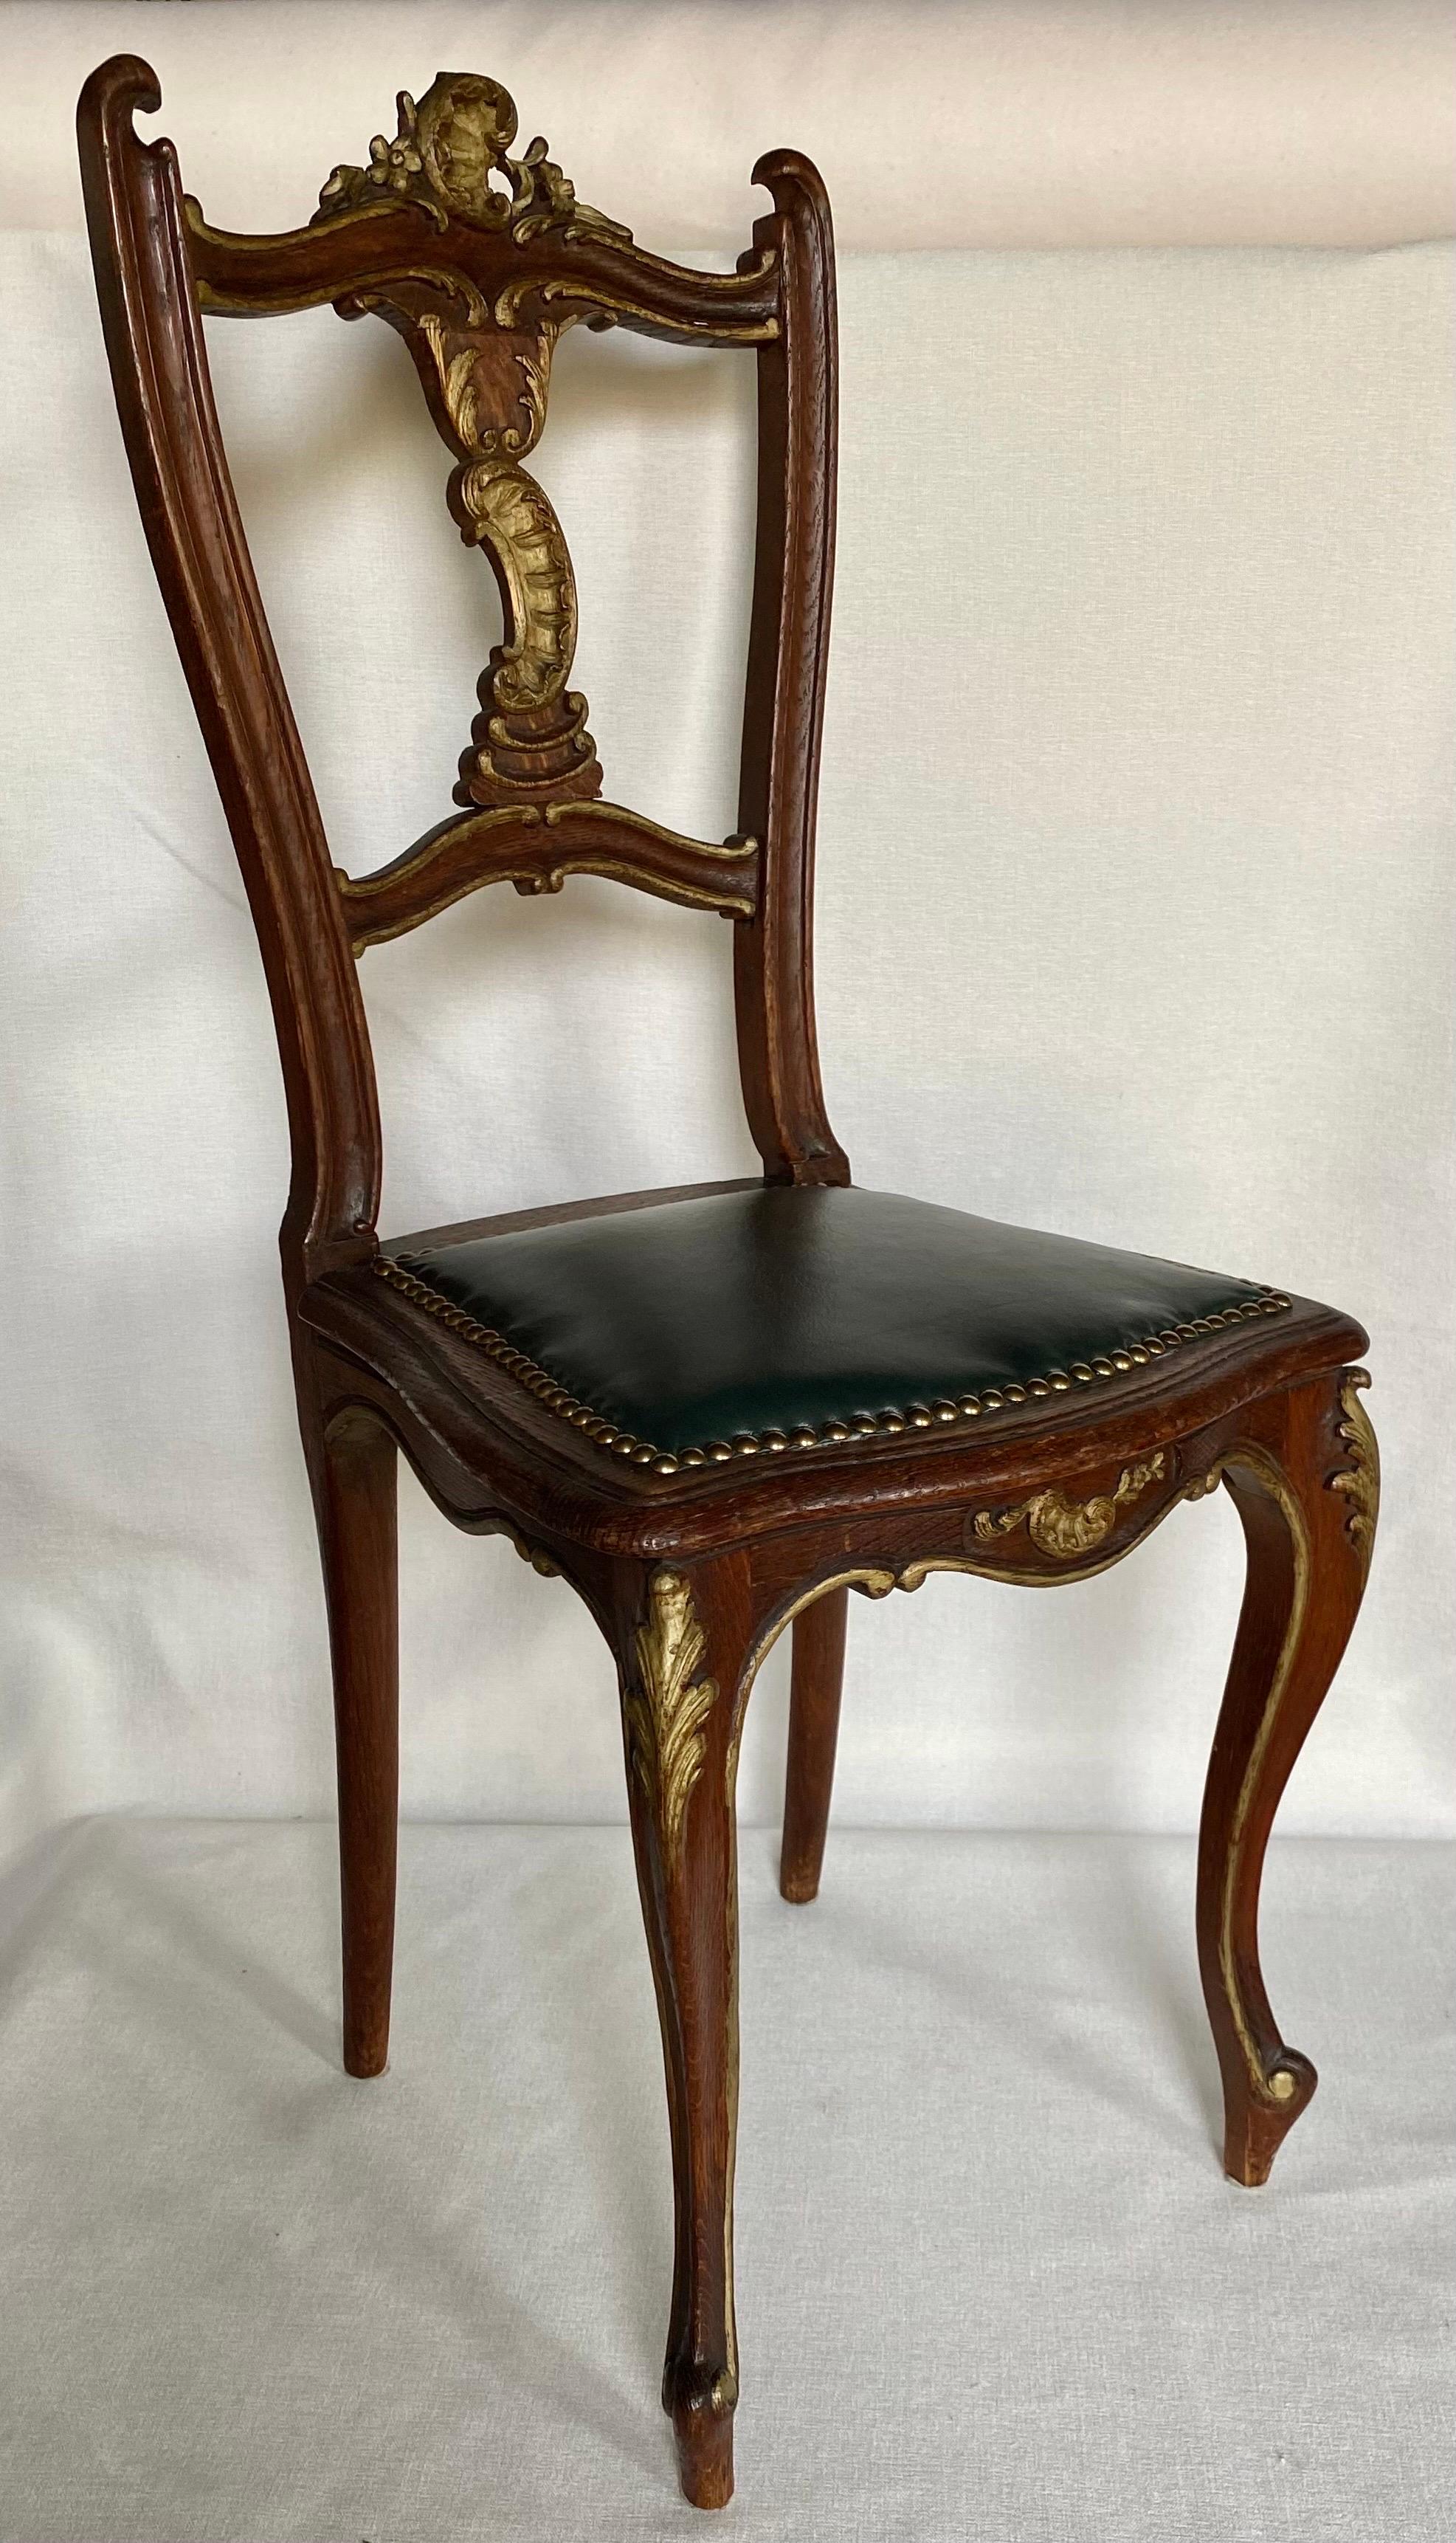 Beistellstuhl im Louis XV-Stil mit geschnitzten, verschnörkelten und vergoldeten Akzenten und geschwungenen Cabriole-Beinen. Dieser hochdekorierte kleine Akzentstuhl ist mit dunkelgrünem Leder gepolstert und mit Messingnagelköpfen verziert. Er